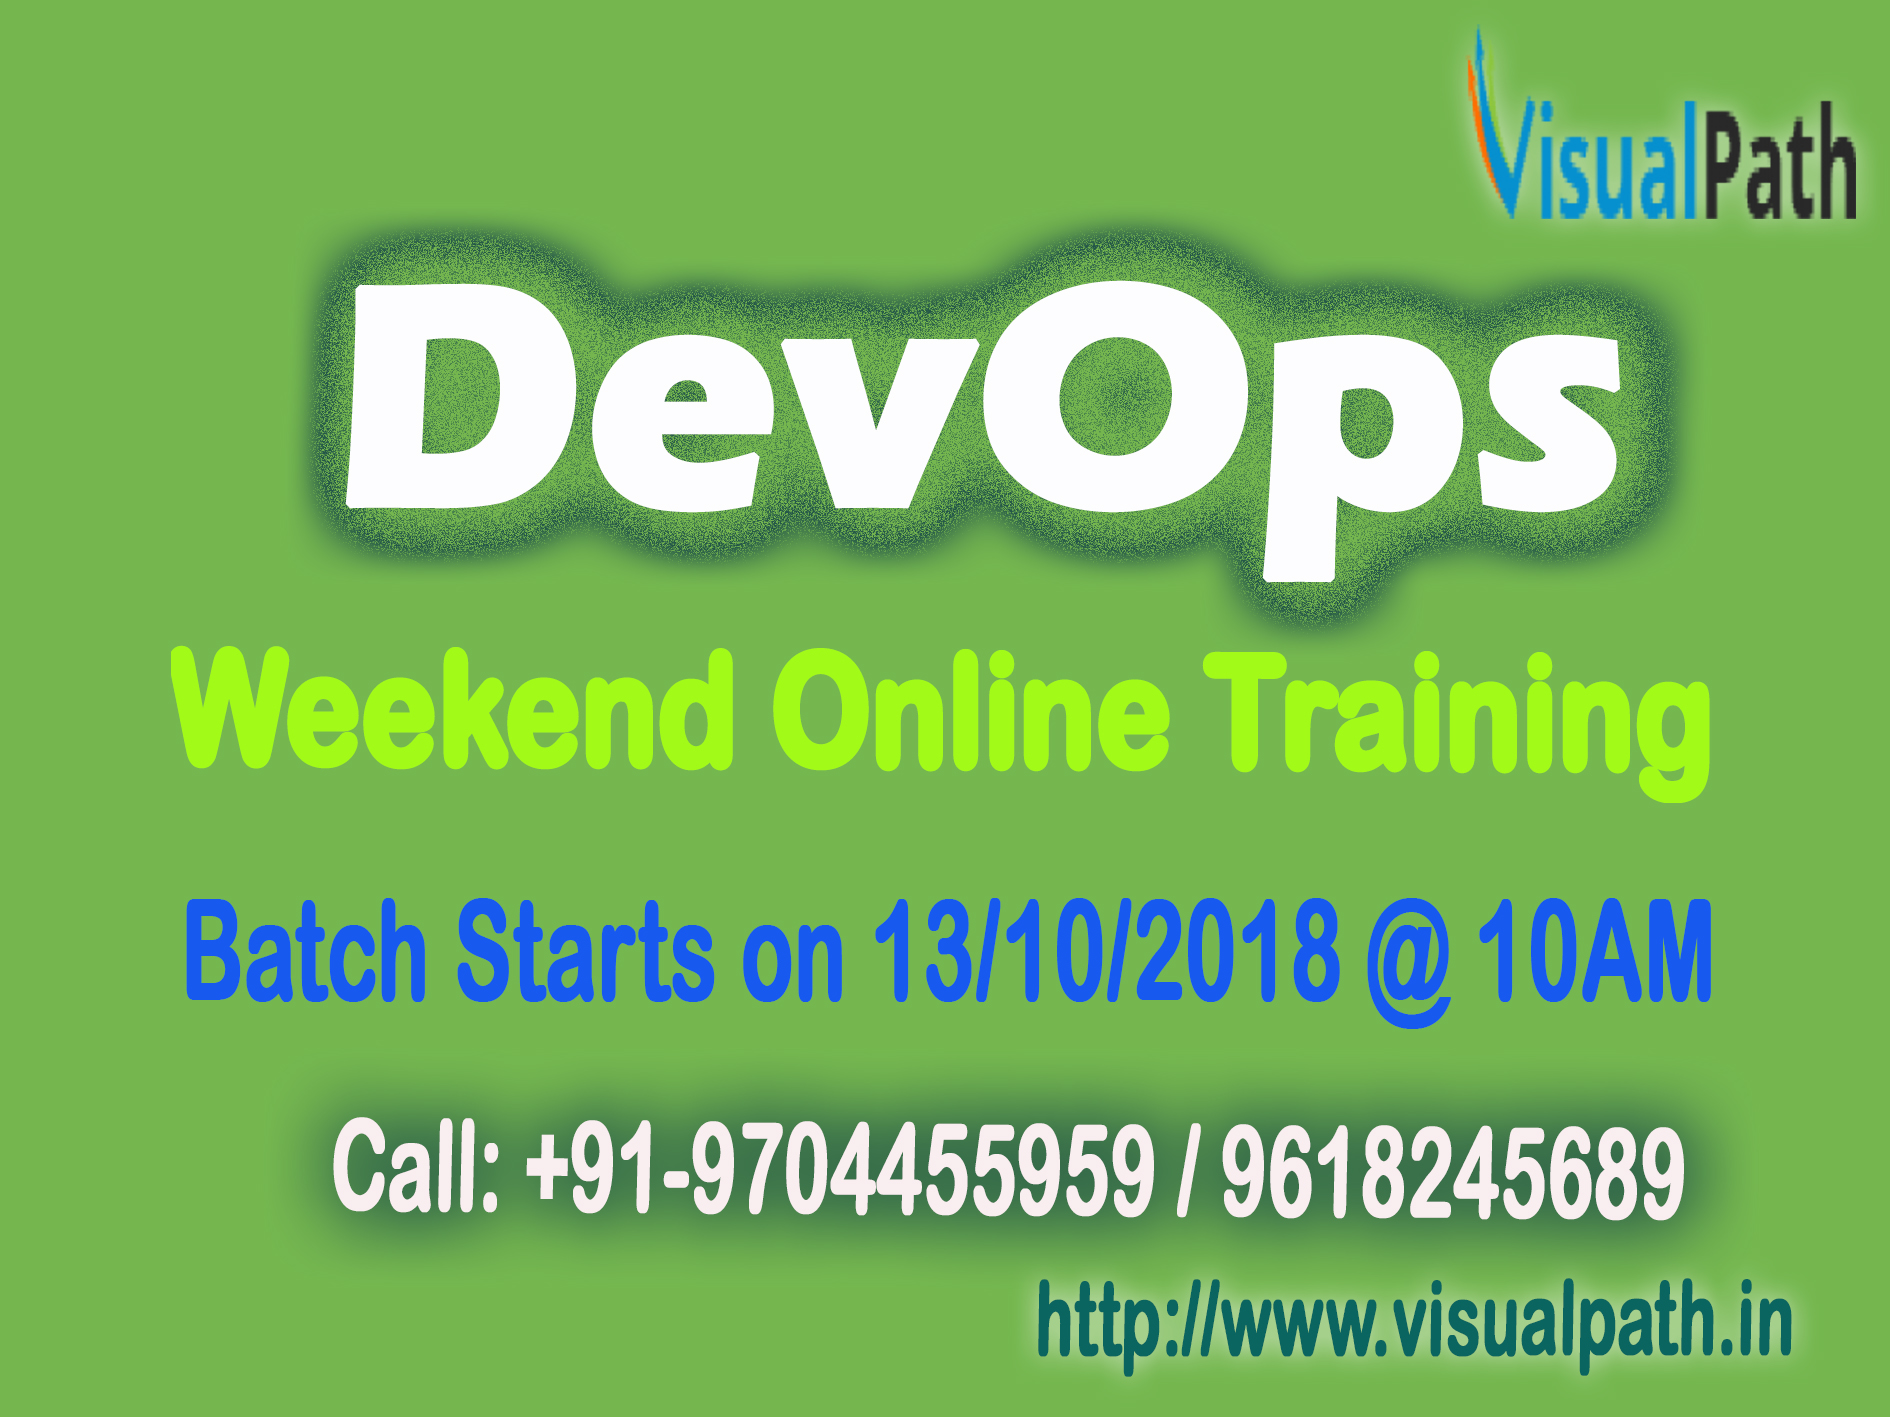 Top Devops Training Institute in Hyderabad, India-Visualpath, Hyderabad, Andhra Pradesh, India